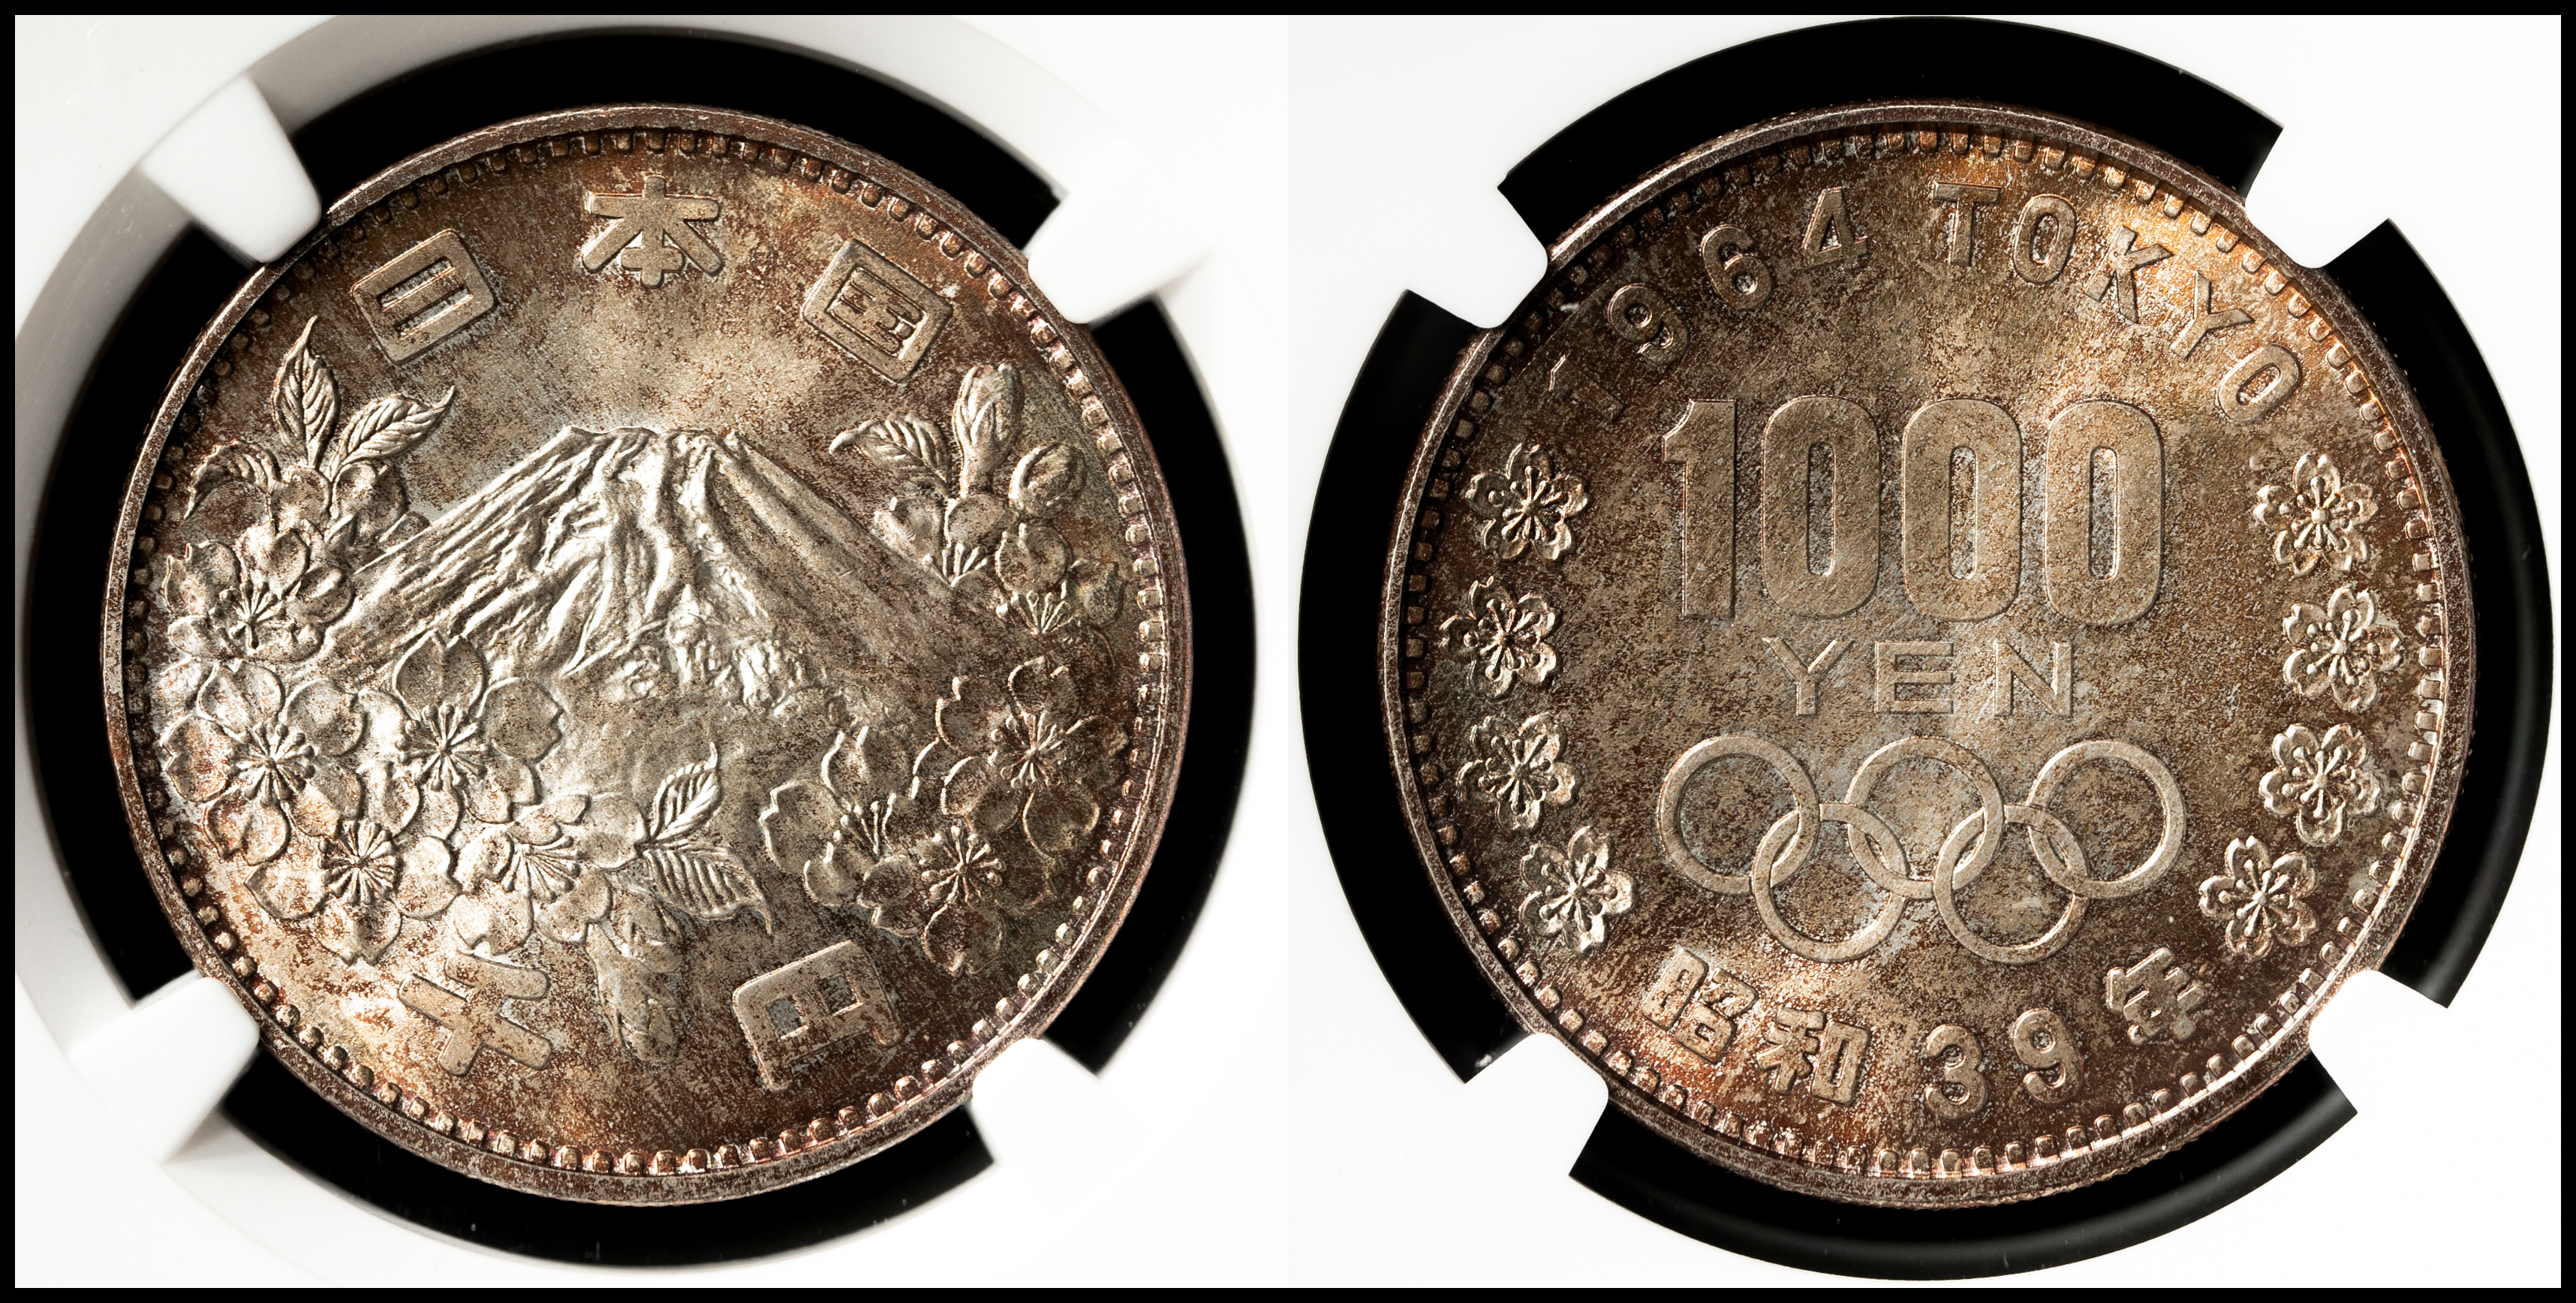 PCGS MS68 東京オリンピック記念1000円銀貨・昭和39年 - 貨幣